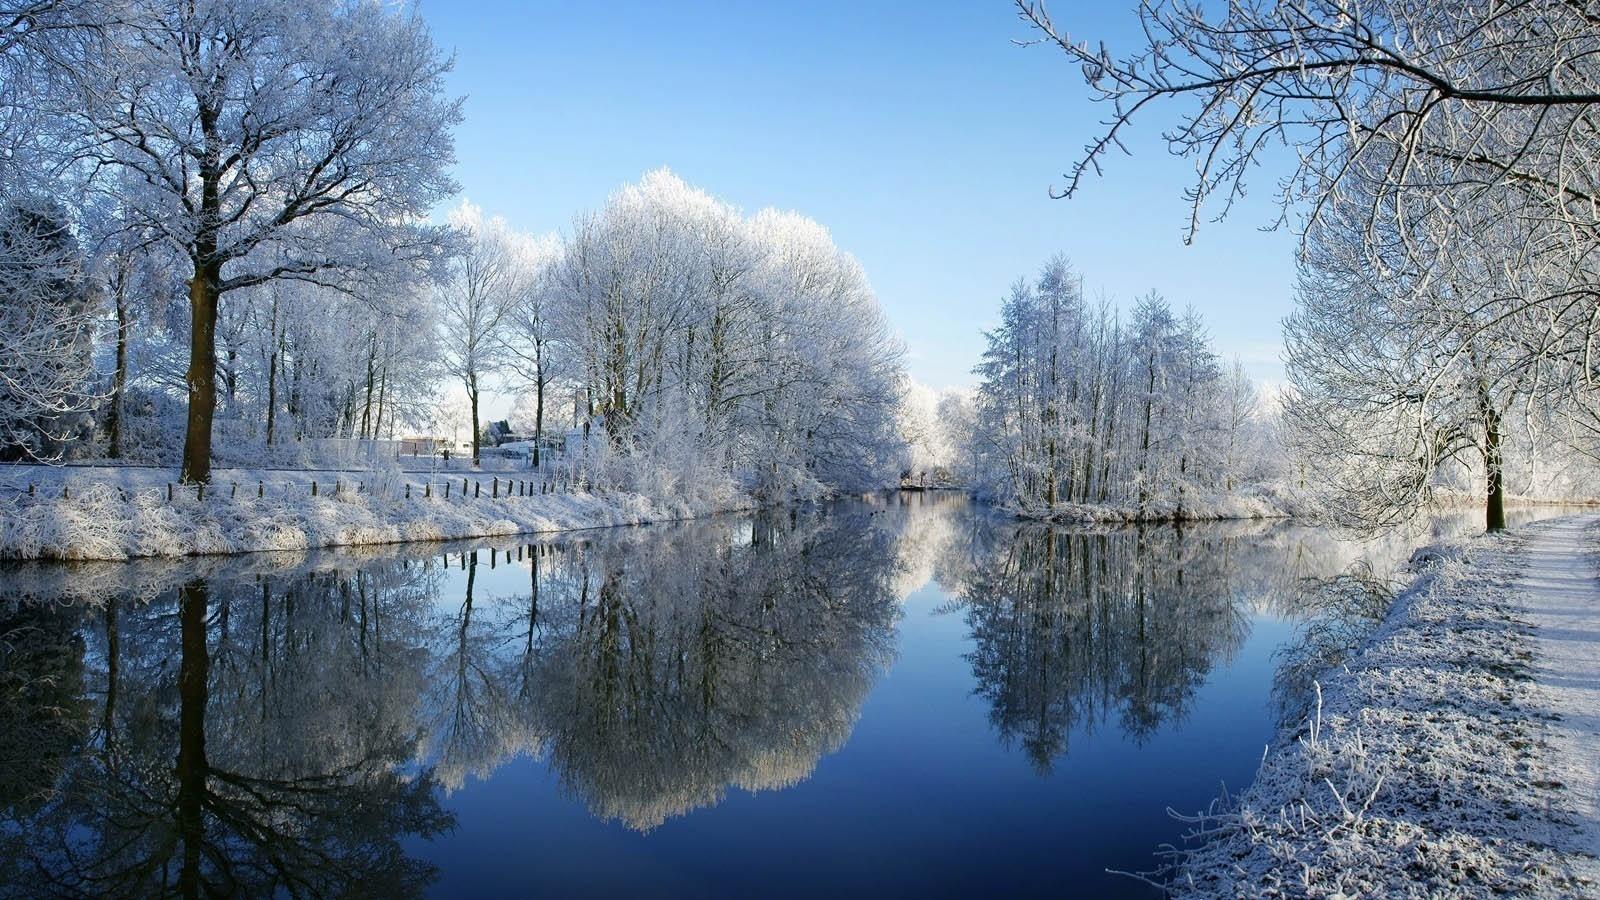 冬天一枝落满积雪的枫叶高清摄影大图-千库网